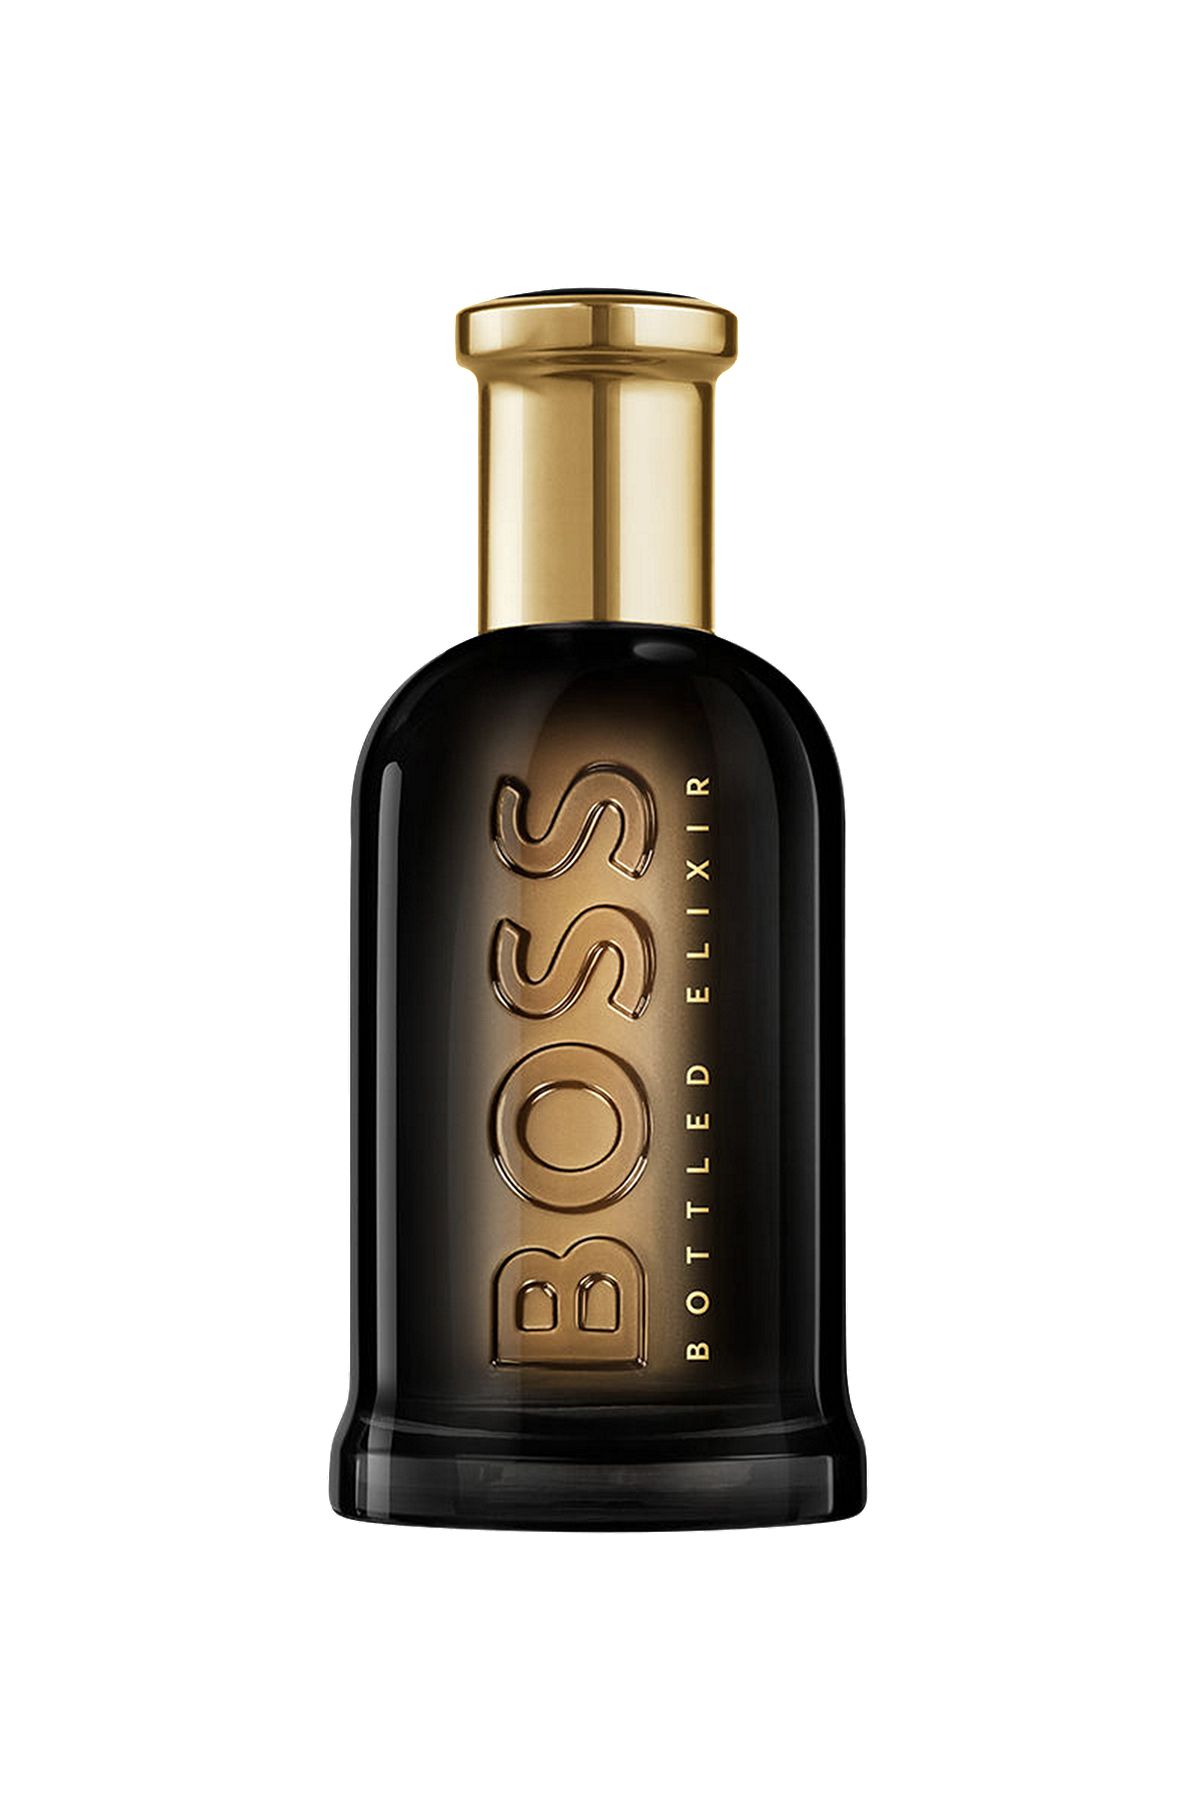 HUGO by Hugo Boss 1.3 oz 40 ml EDT Cologne Spray for Men New in Box